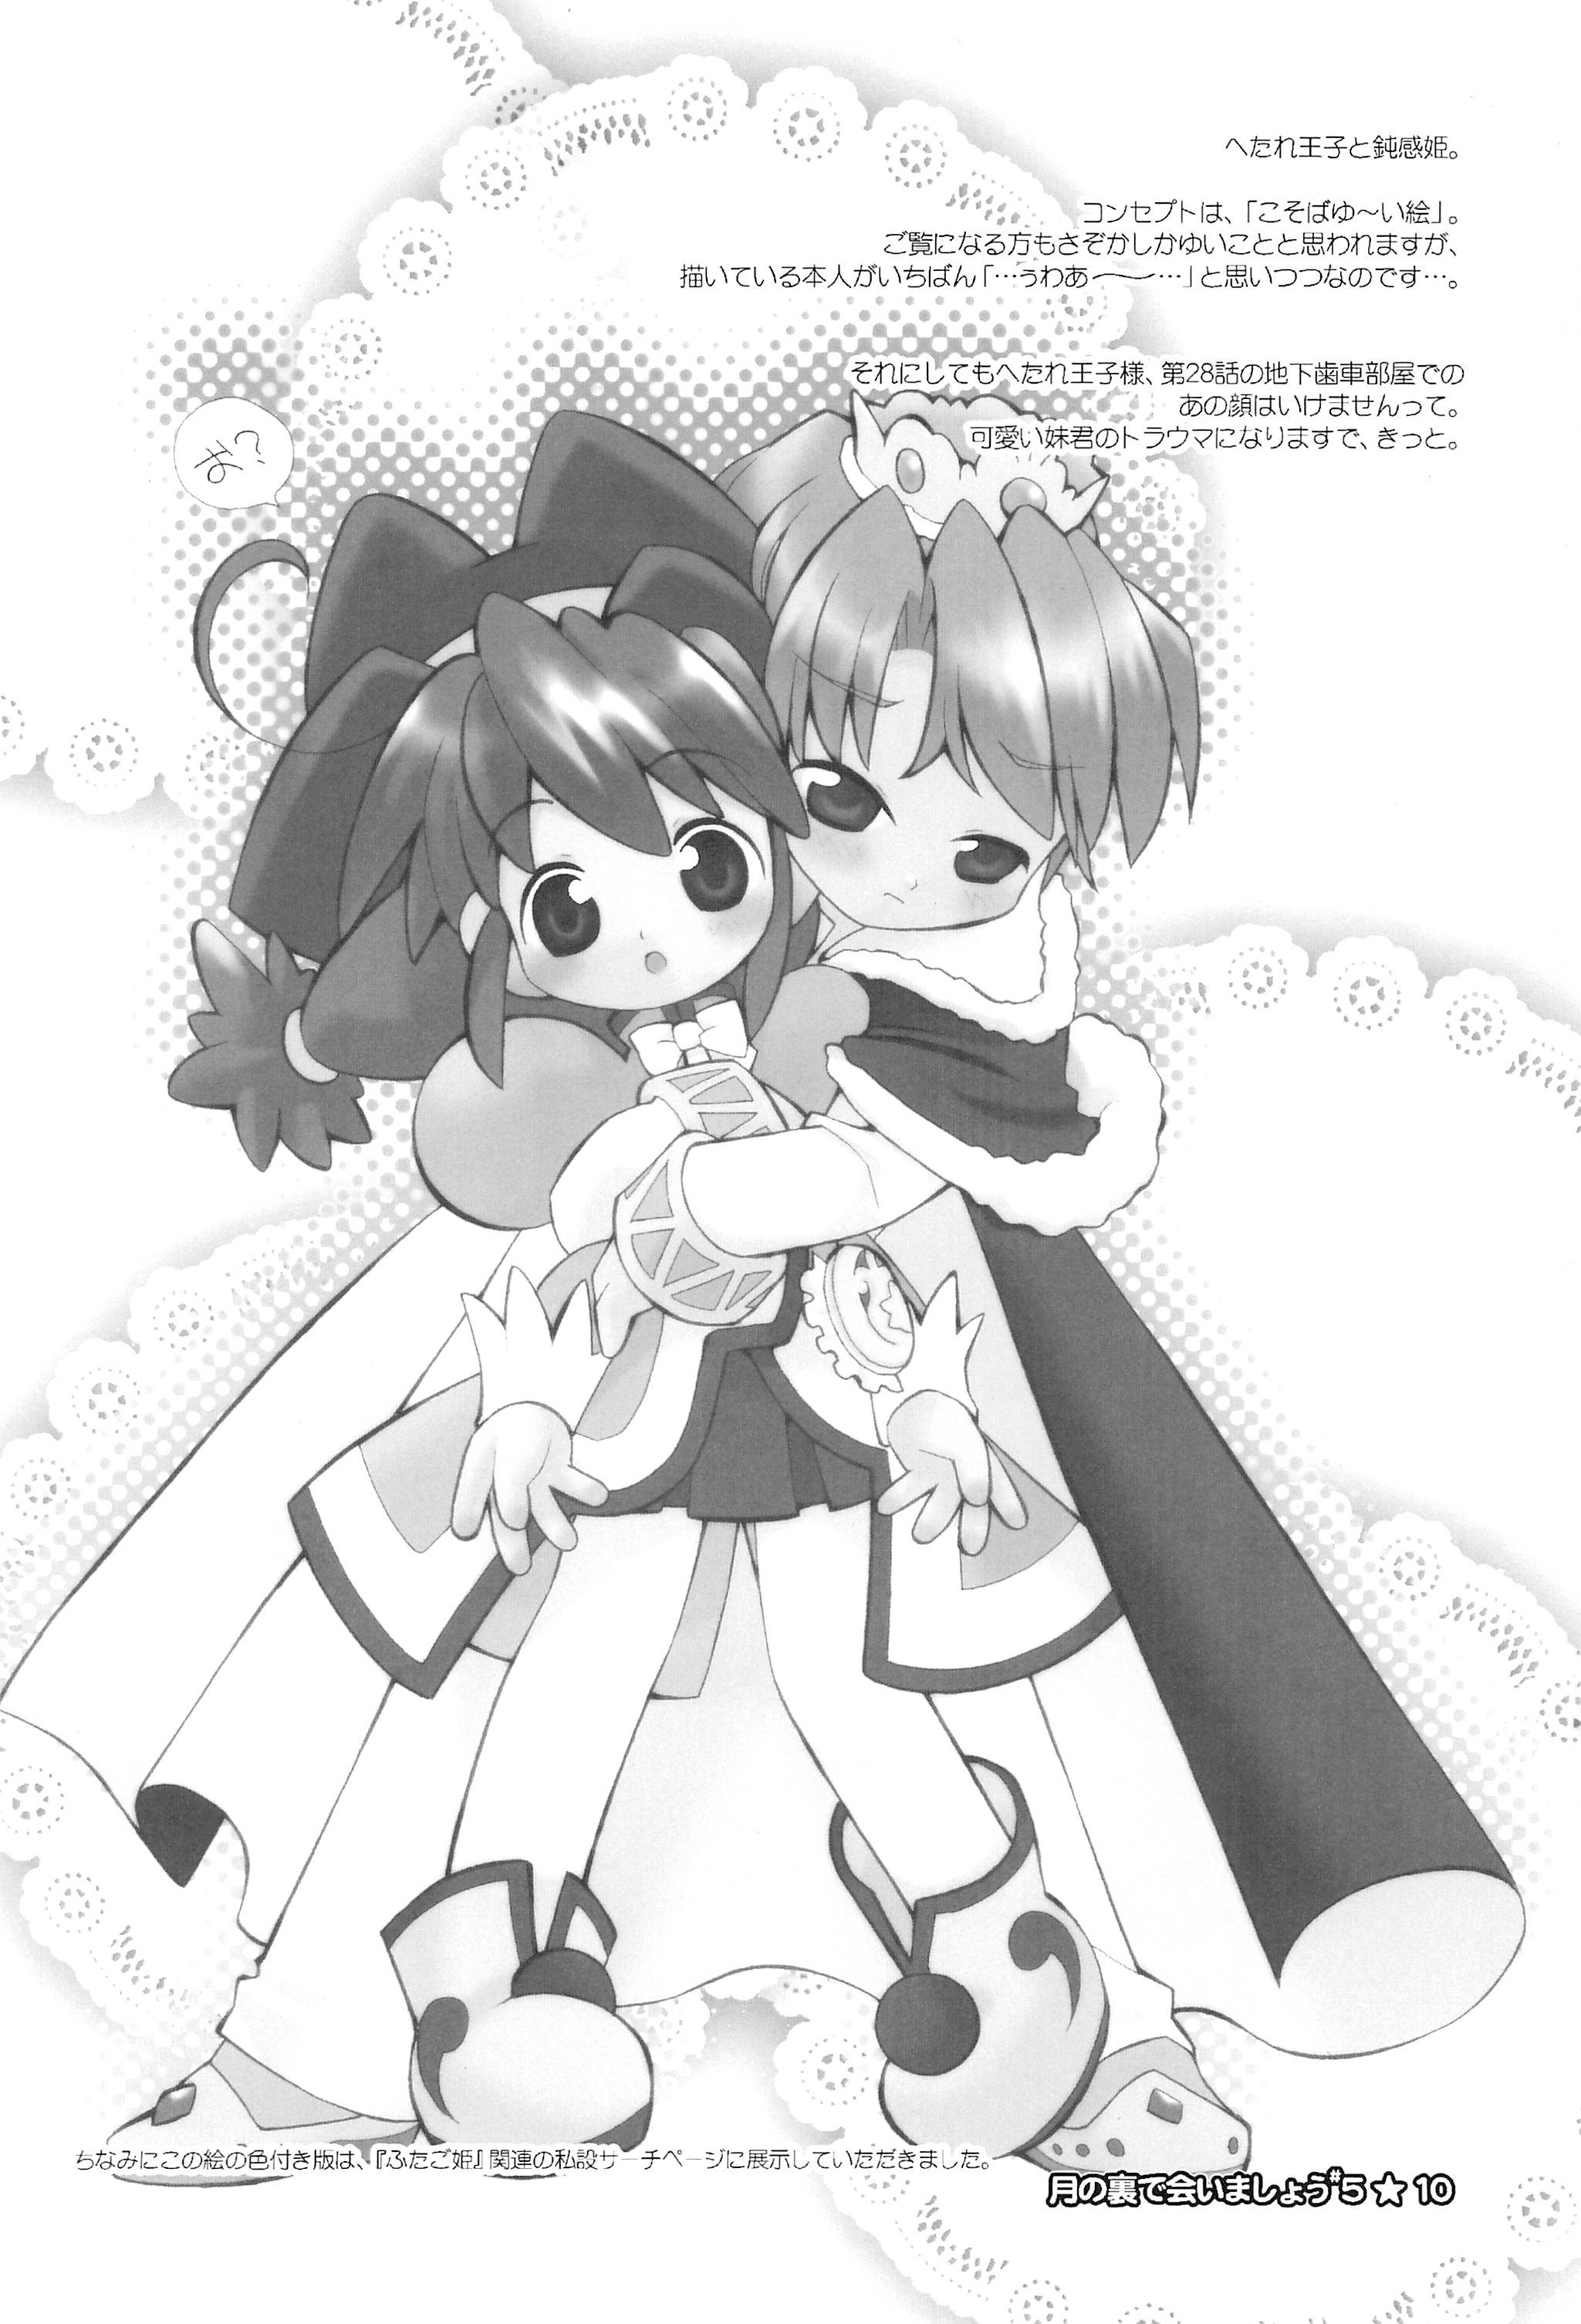 Girlfriend Tsuki no Ura de Aimashou #5 - Let's go to the Darkside of the Moon #5 - Fushigiboshi no futagohime Worship - Page 12